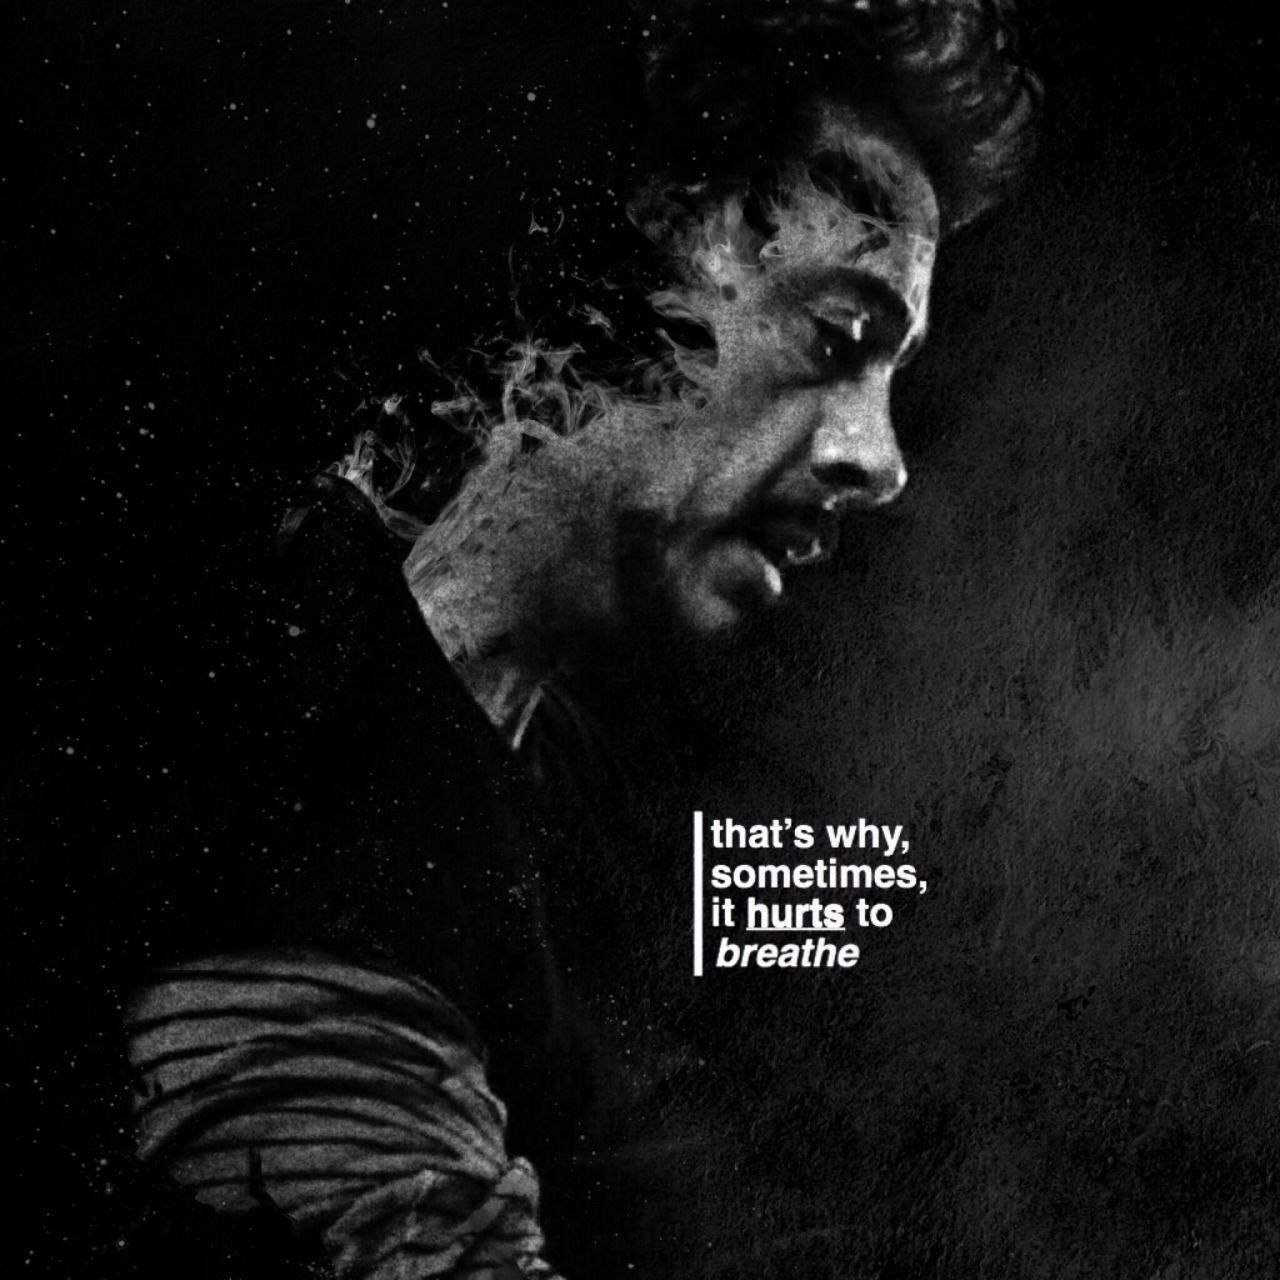 Tony Stark Quotes Wallpaper Free Tony Stark Quotes Background